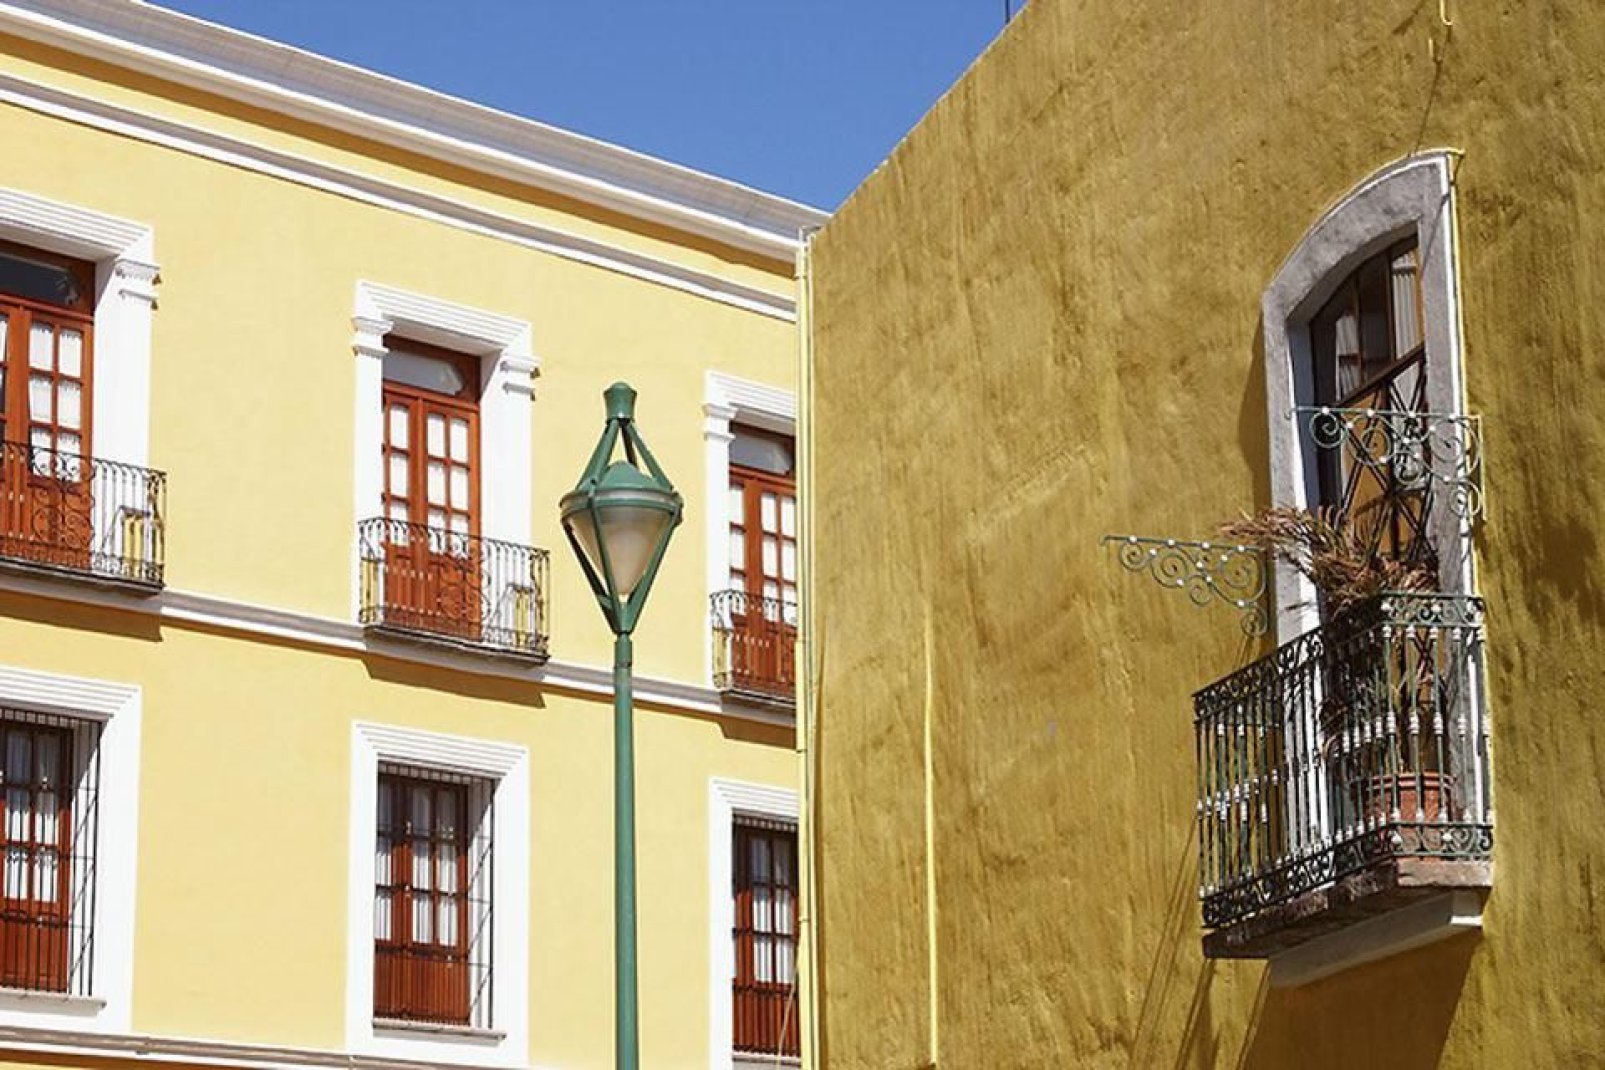 Il centro della città è ricco di edifici in stile coloniale. Puebla è stata fondata nel 1531 dagli spagnoli.